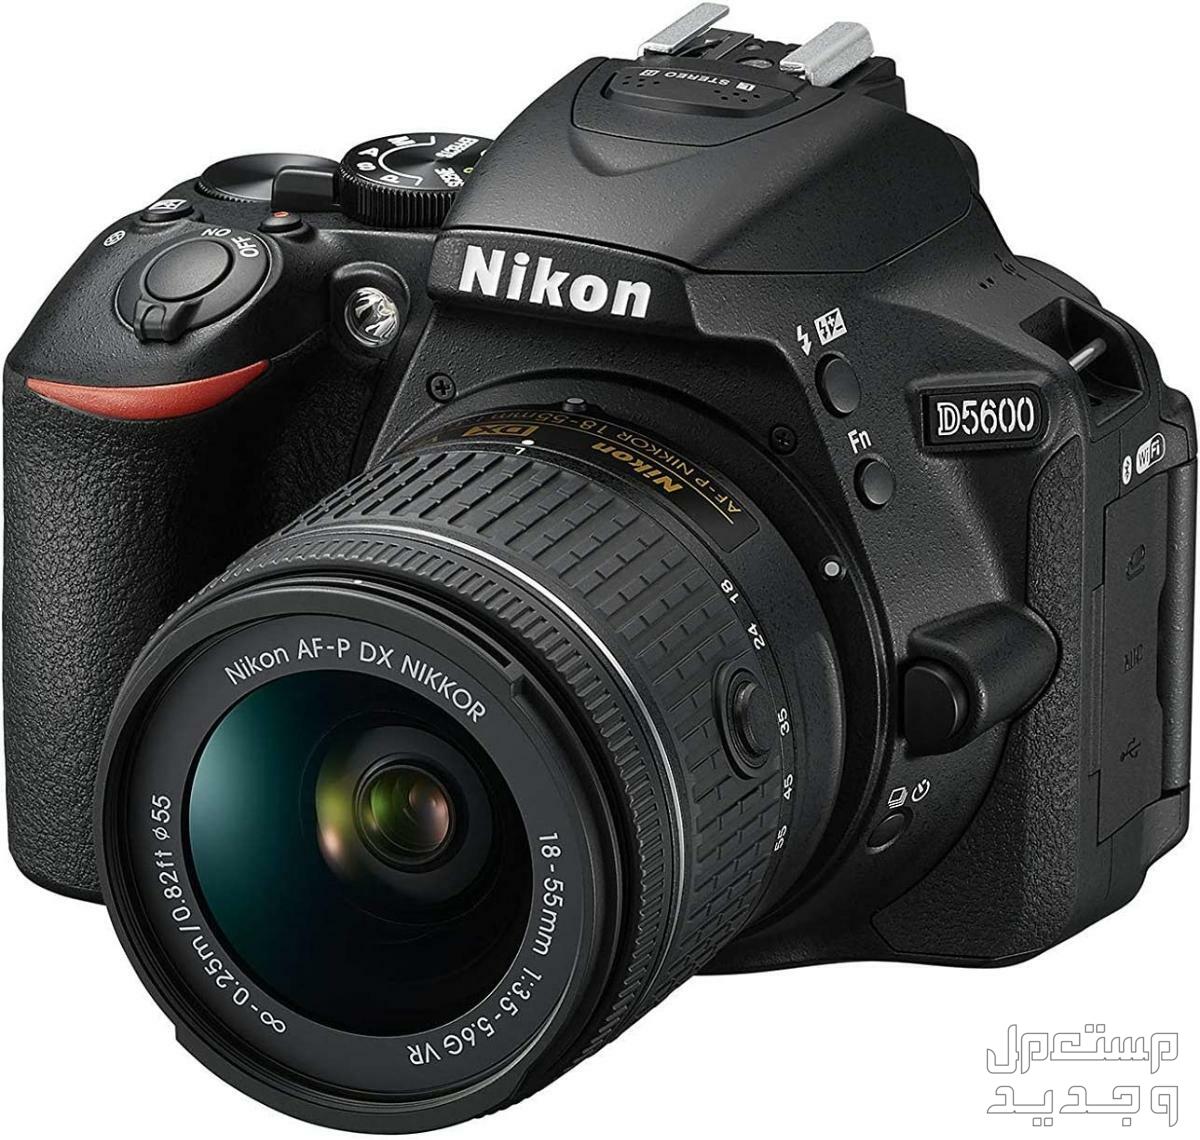 10 كاميرات تصوير ماركات عالمية بأسعار رخيصة في ليبيا كاميرا Nikon D5600